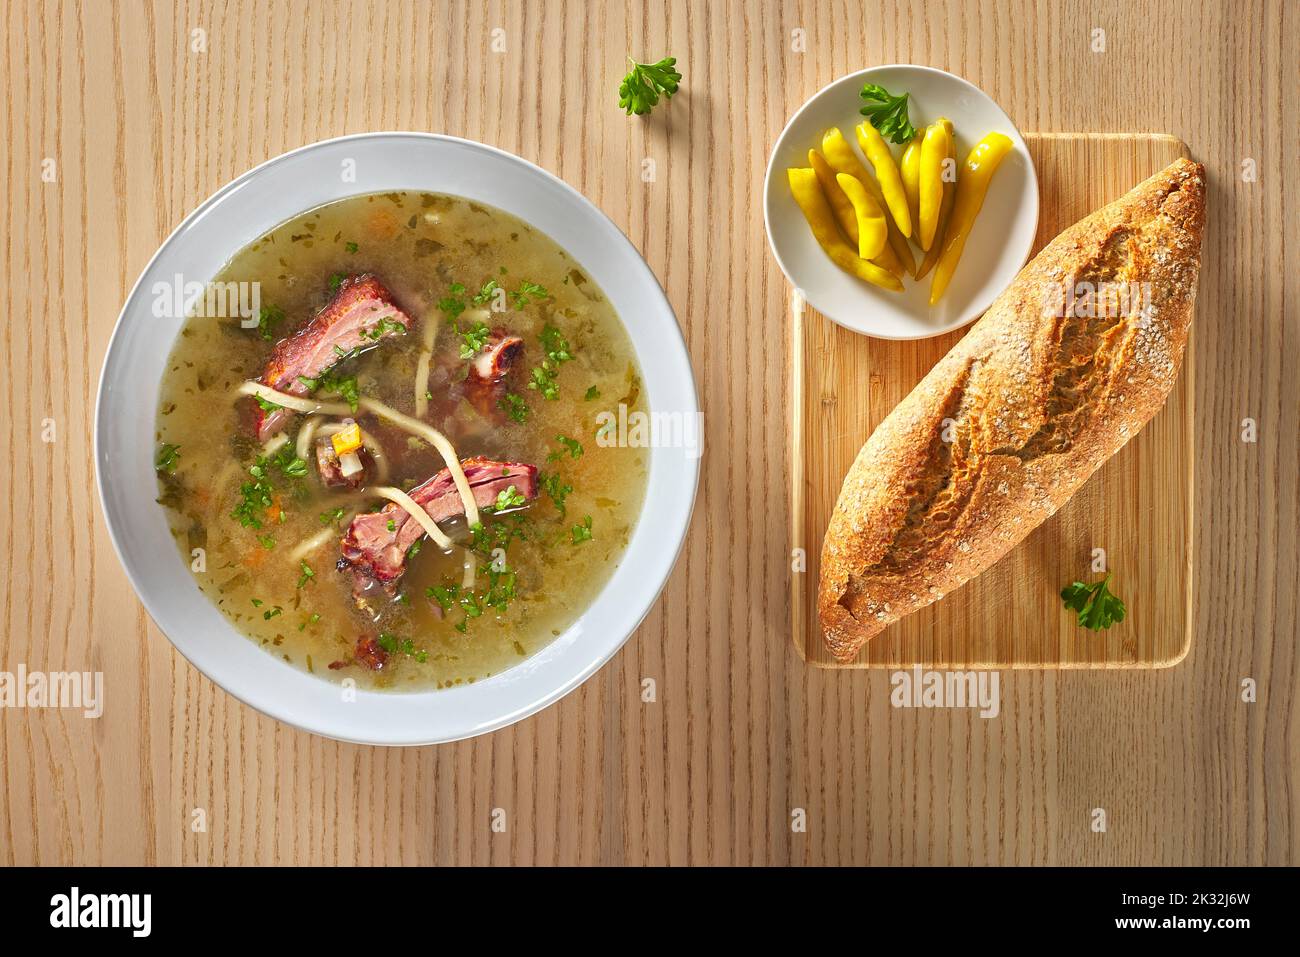 Sopa de costillas ahumadas con verduras, pan, pimientos picantes y hierbas en un recipiente blanco sobre fondo de madera Foto de stock